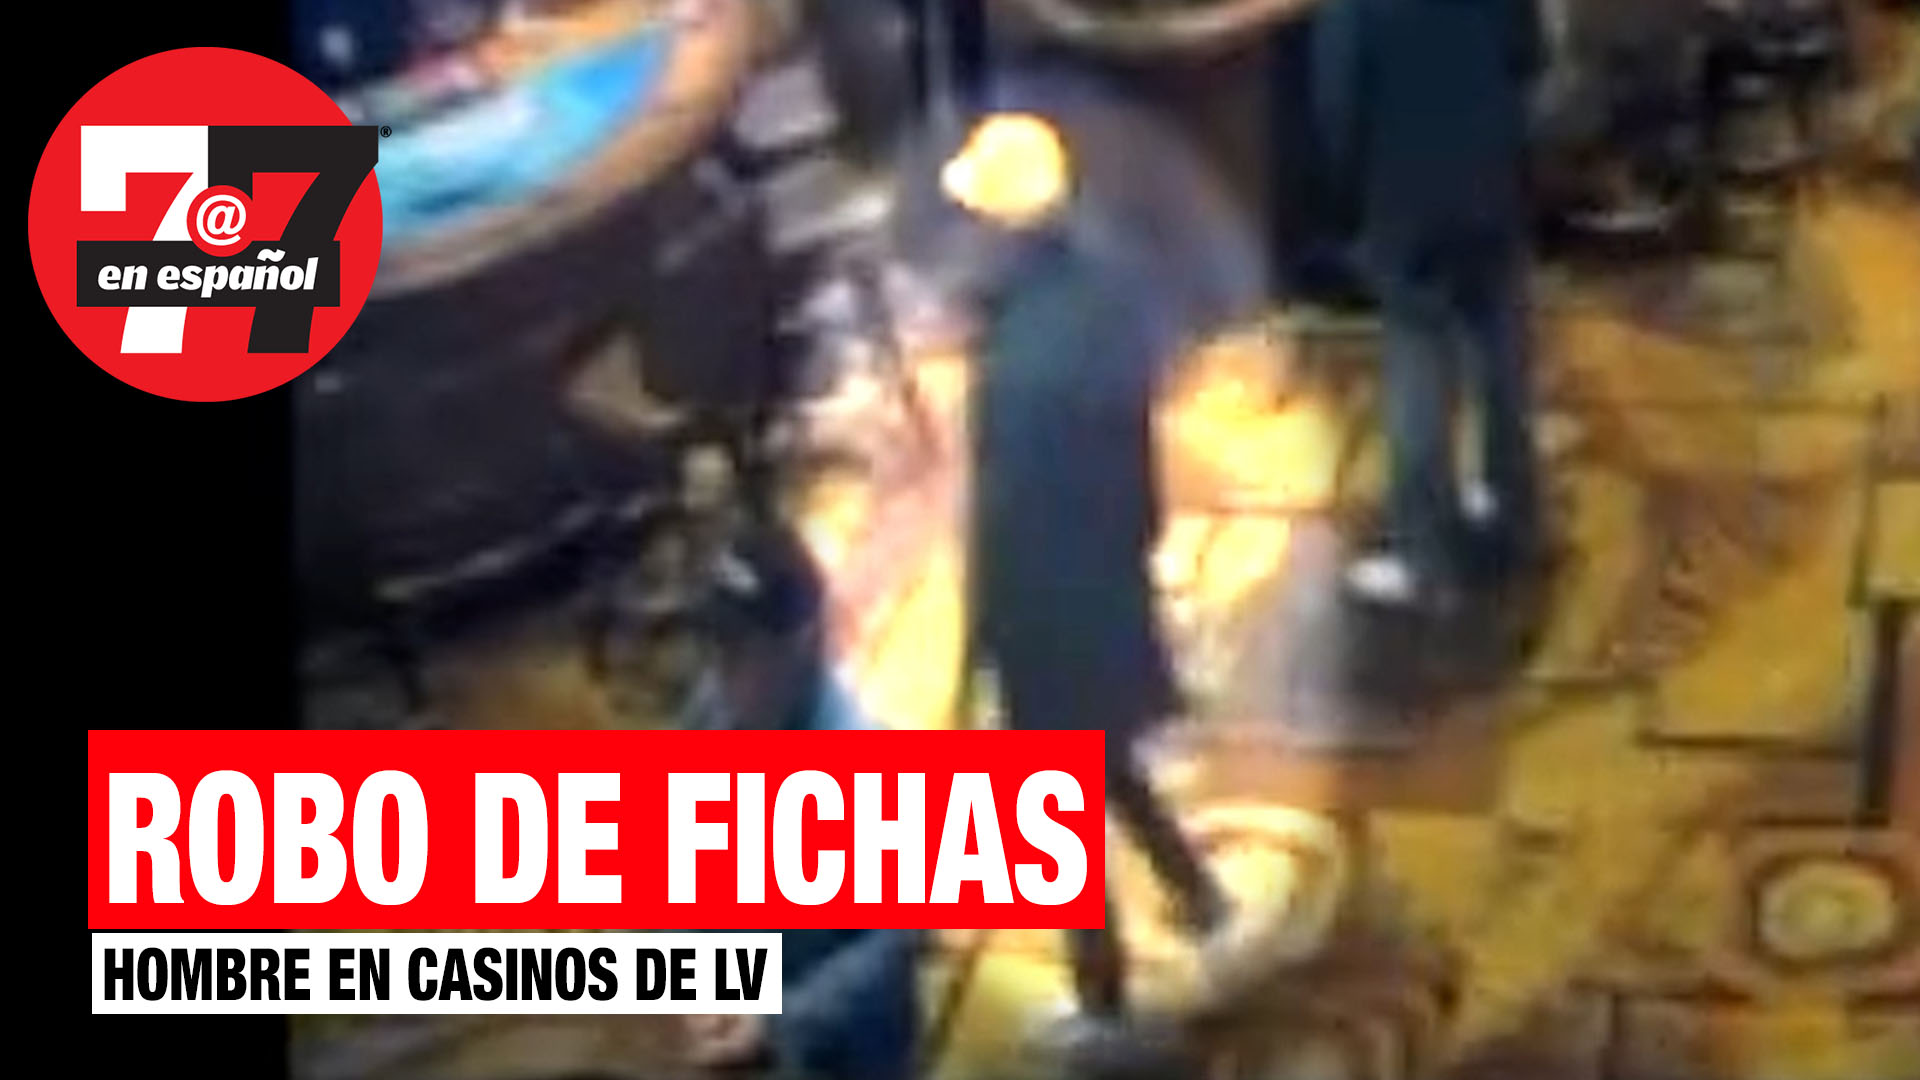 Noticias de Las Vegas | Video muestra a hombre robando mesas de casinos en Las Vegas